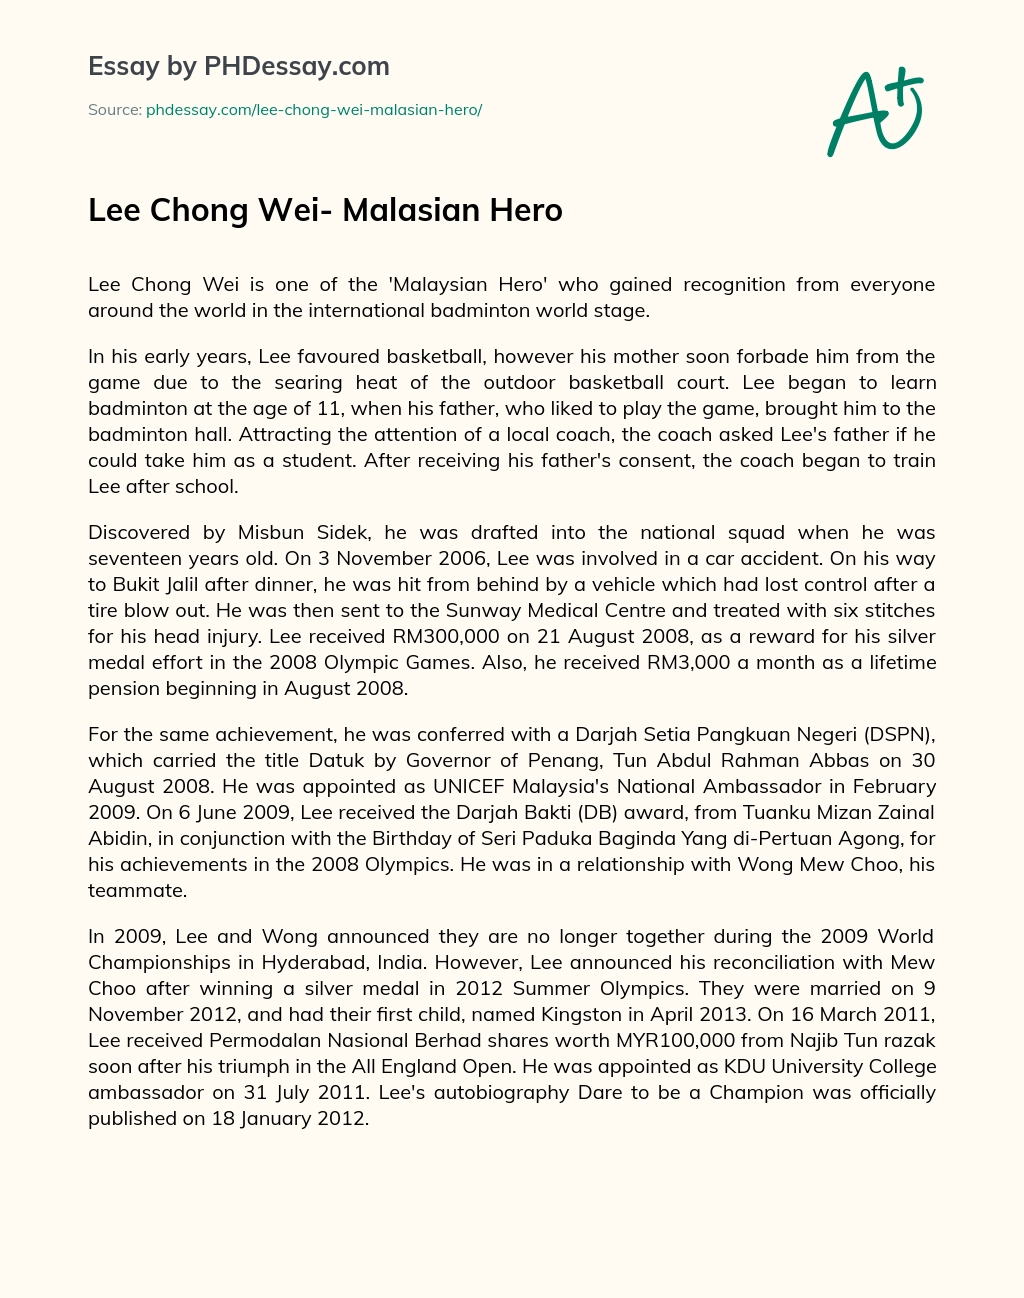 Lee Chong Wei- Malasian Hero essay